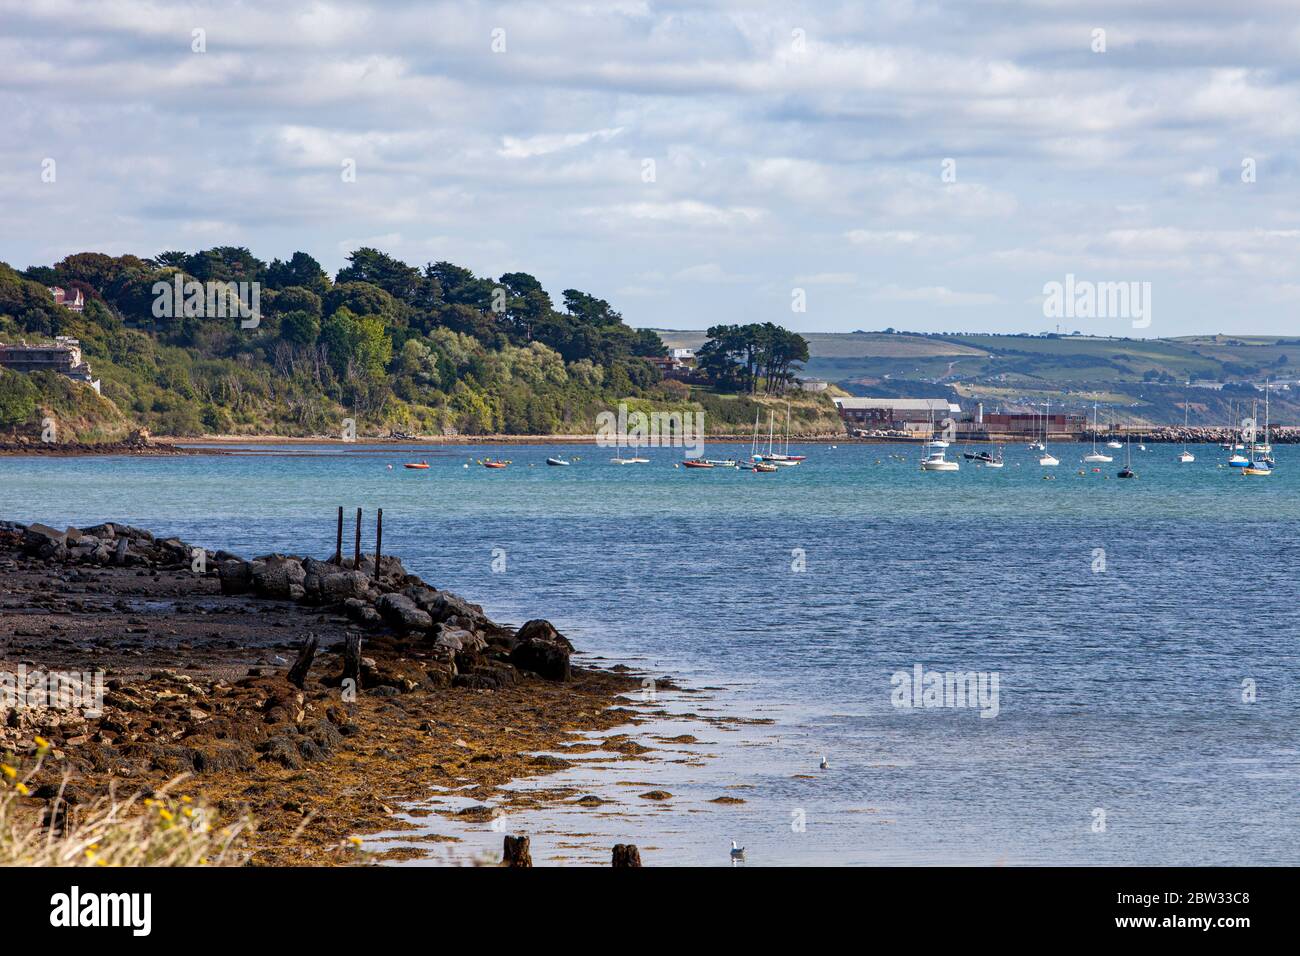 Une vue magnifique sur la baie de Weymouth avec de nombreux bateaux amarrés, y compris des bateaux à voile, des bateaux à rames et des bateaux à coque Banque D'Images